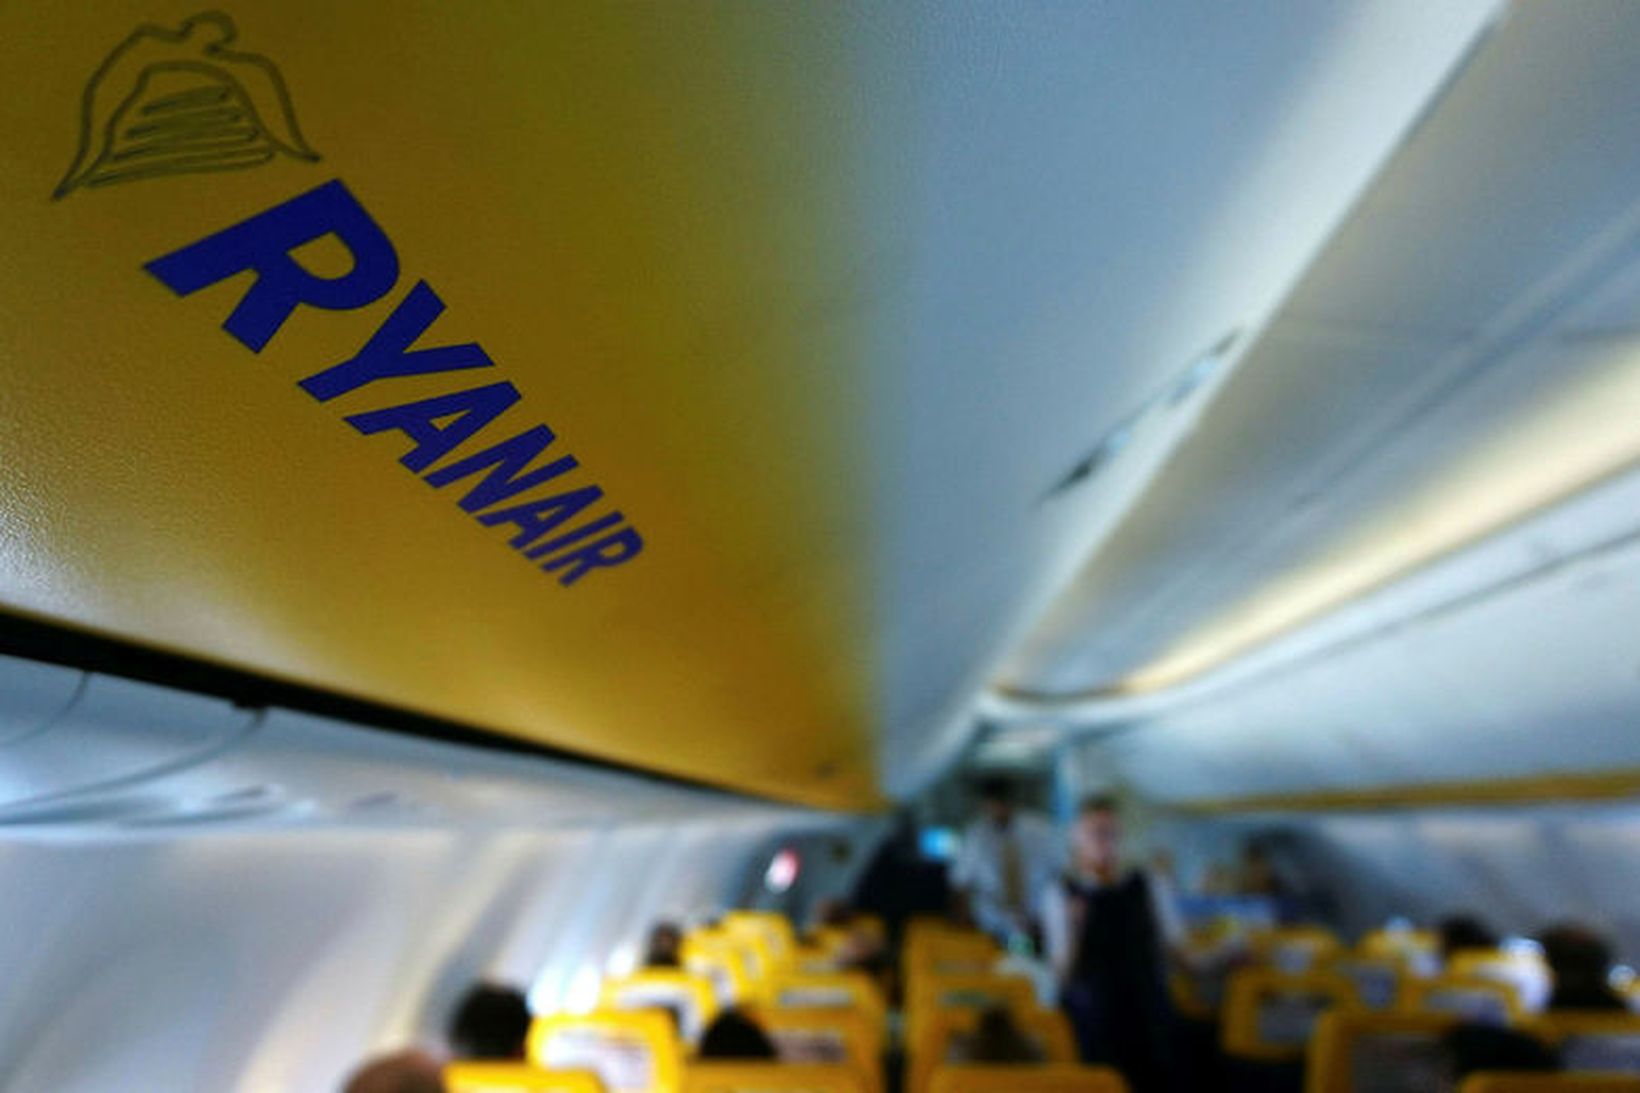 Fjölmargt fólk varð ævareitt og ætlar að sniðganga Ryanair.